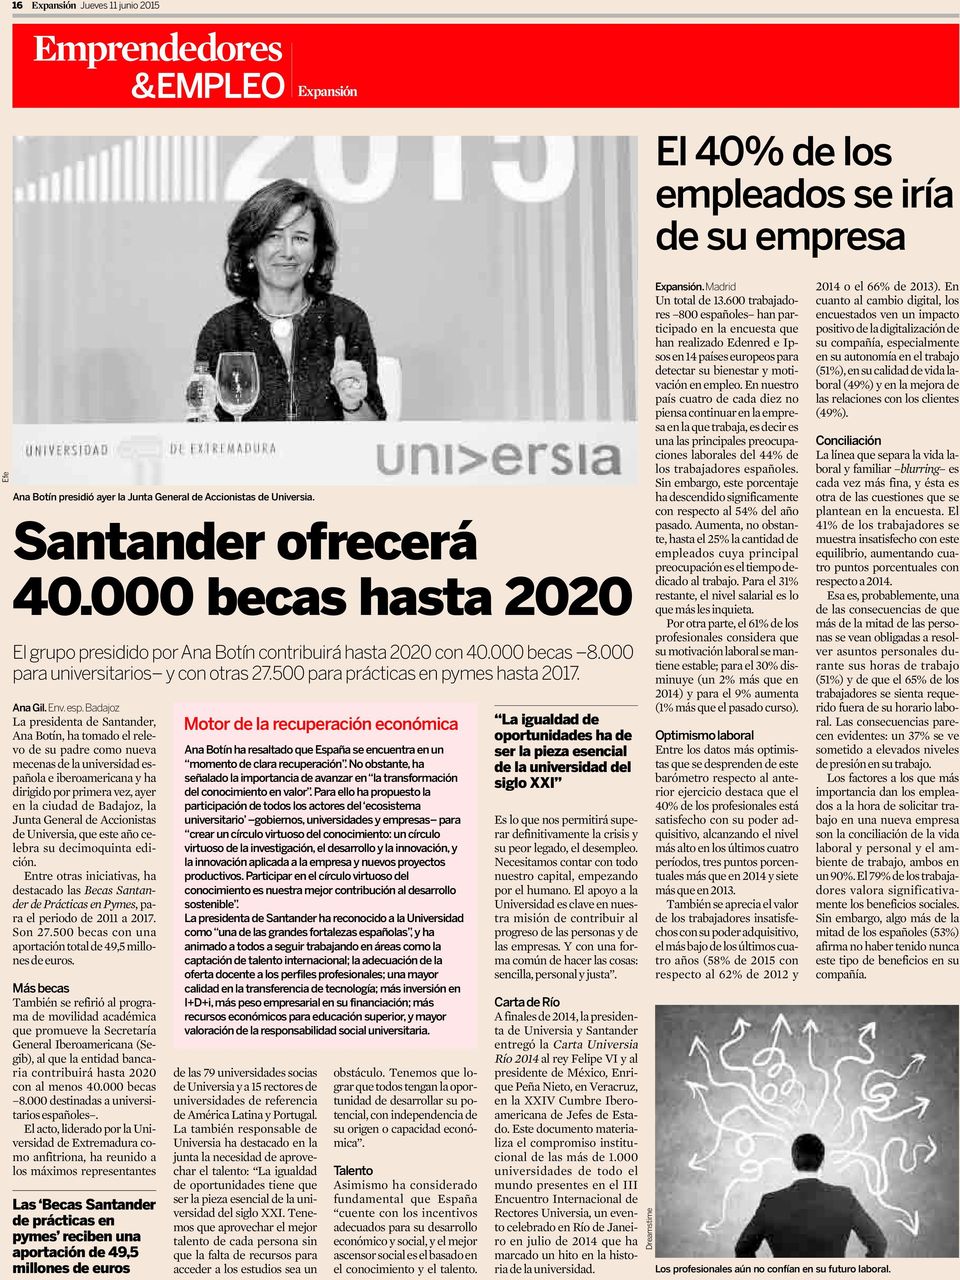 Badajoz La presidenta de Santander, Ana Botín, ha tomado el relevo de su padre como nueva mecenas de la universidad española e iberoamericana y ha dirigido por primera vez, ayer en la ciudad de